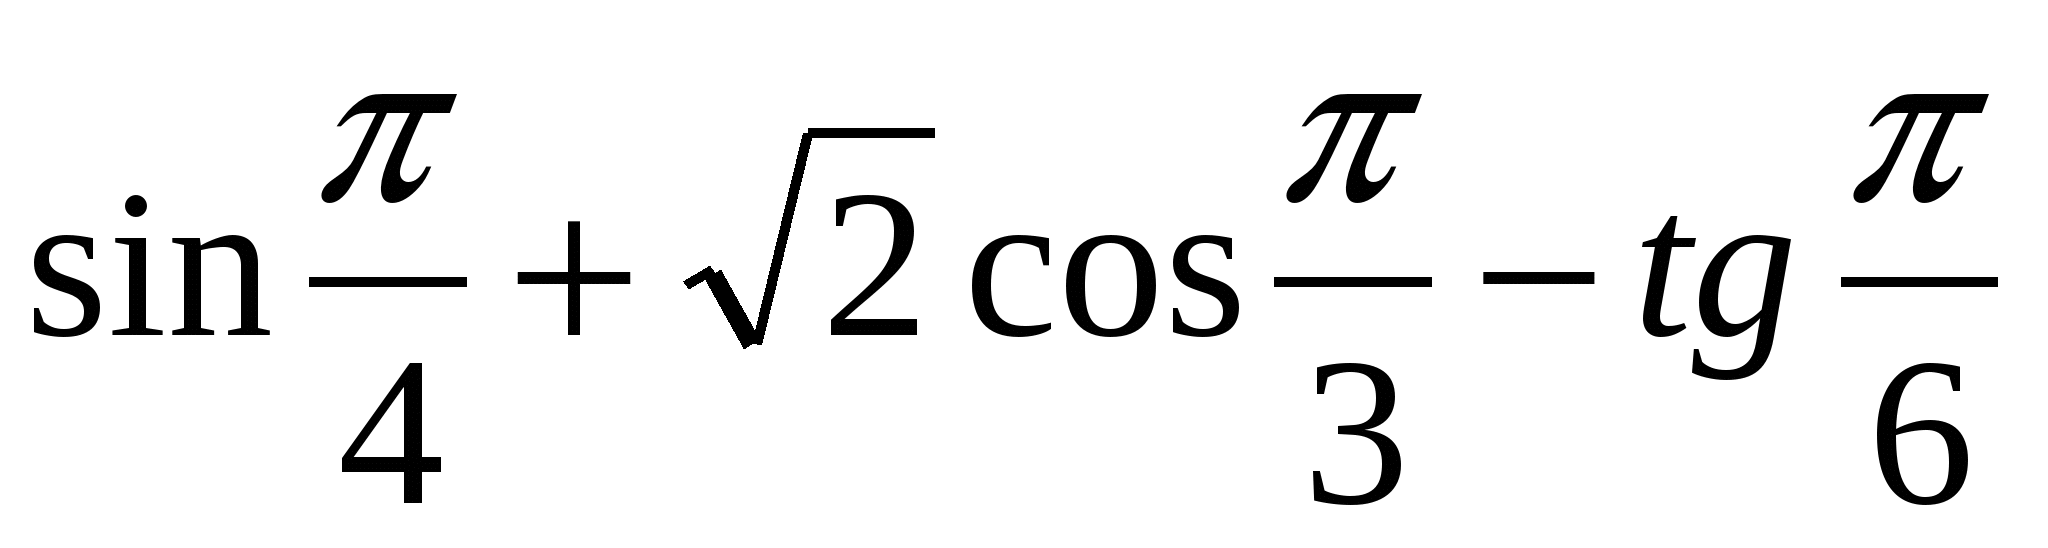 Развернутый план занятия по математике на тему Тангенс и котангенс числового аргумента